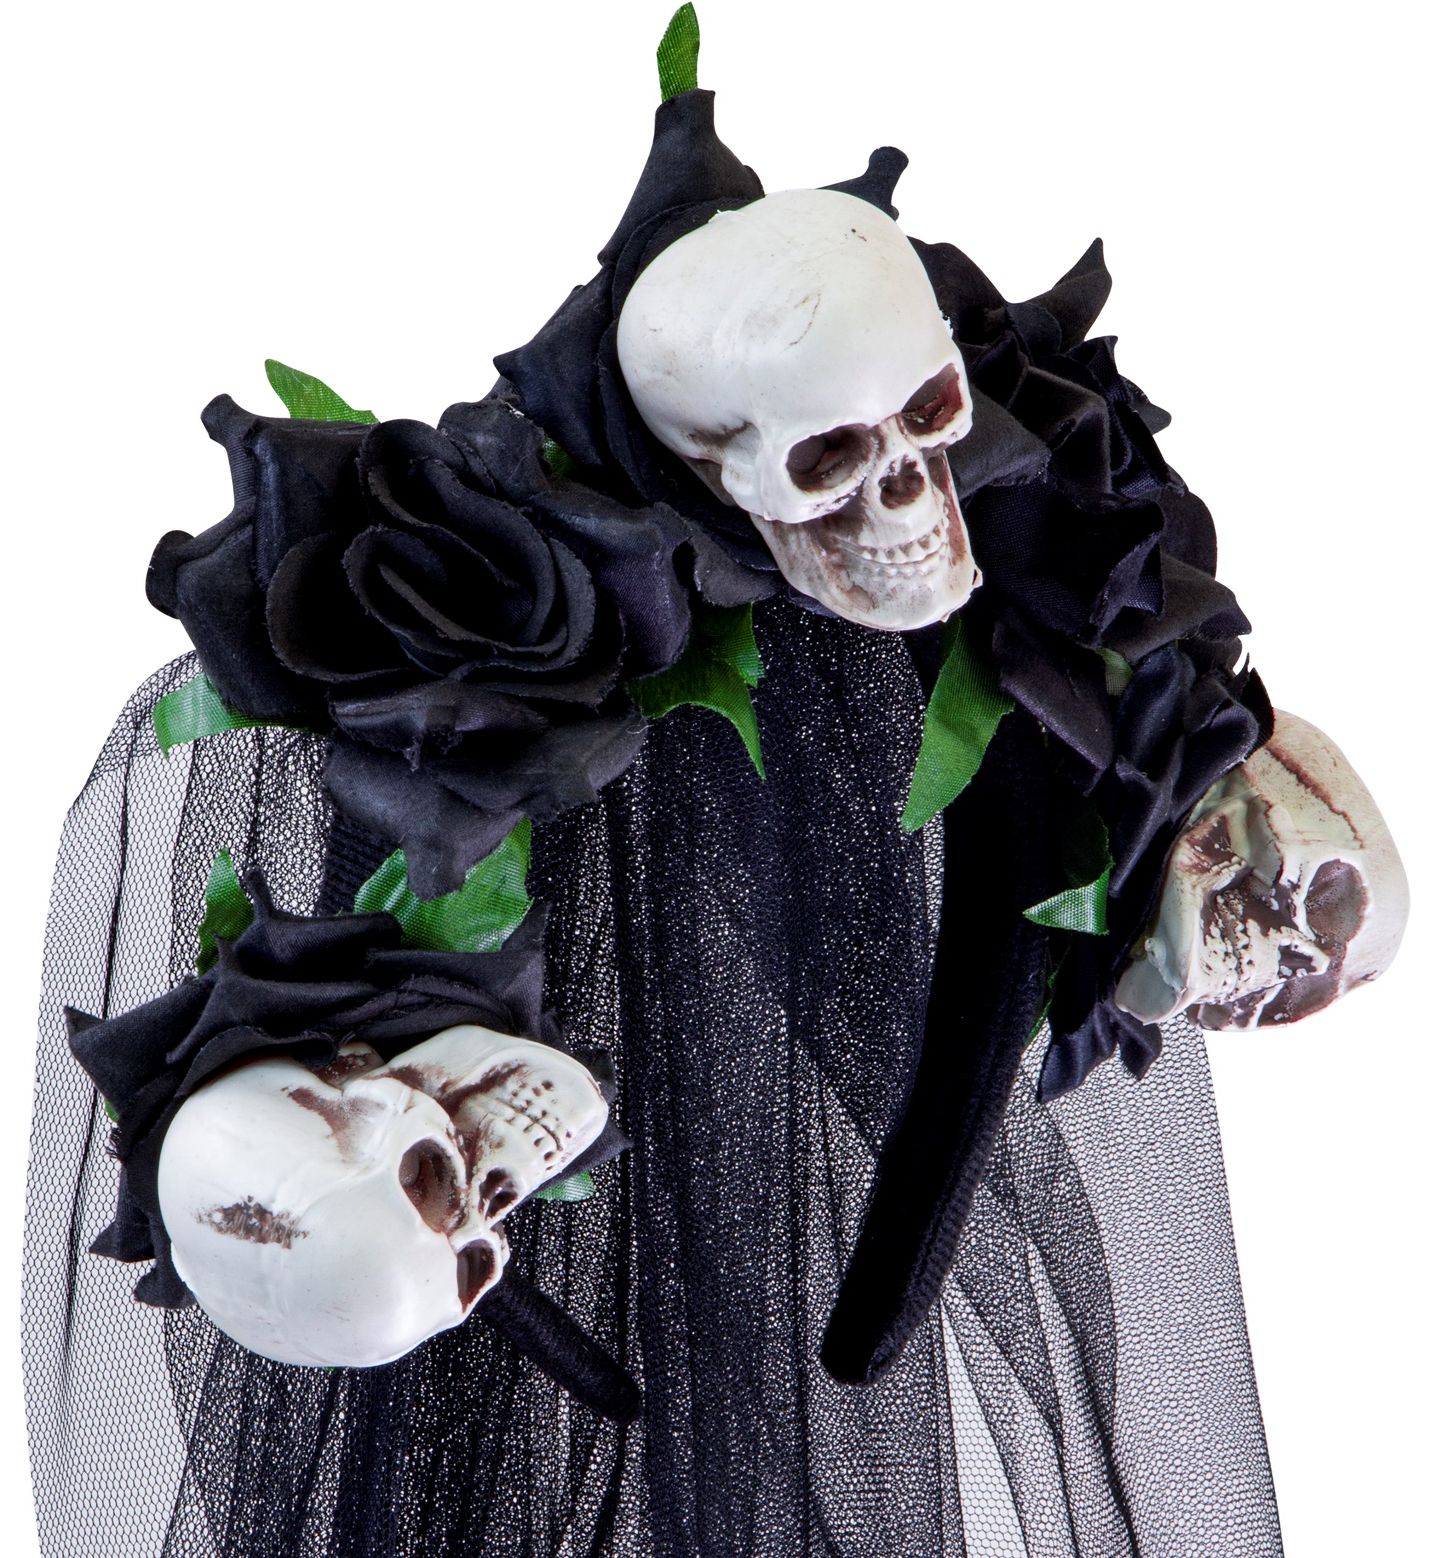 Bruidsluier met schedels en zwarte rozen